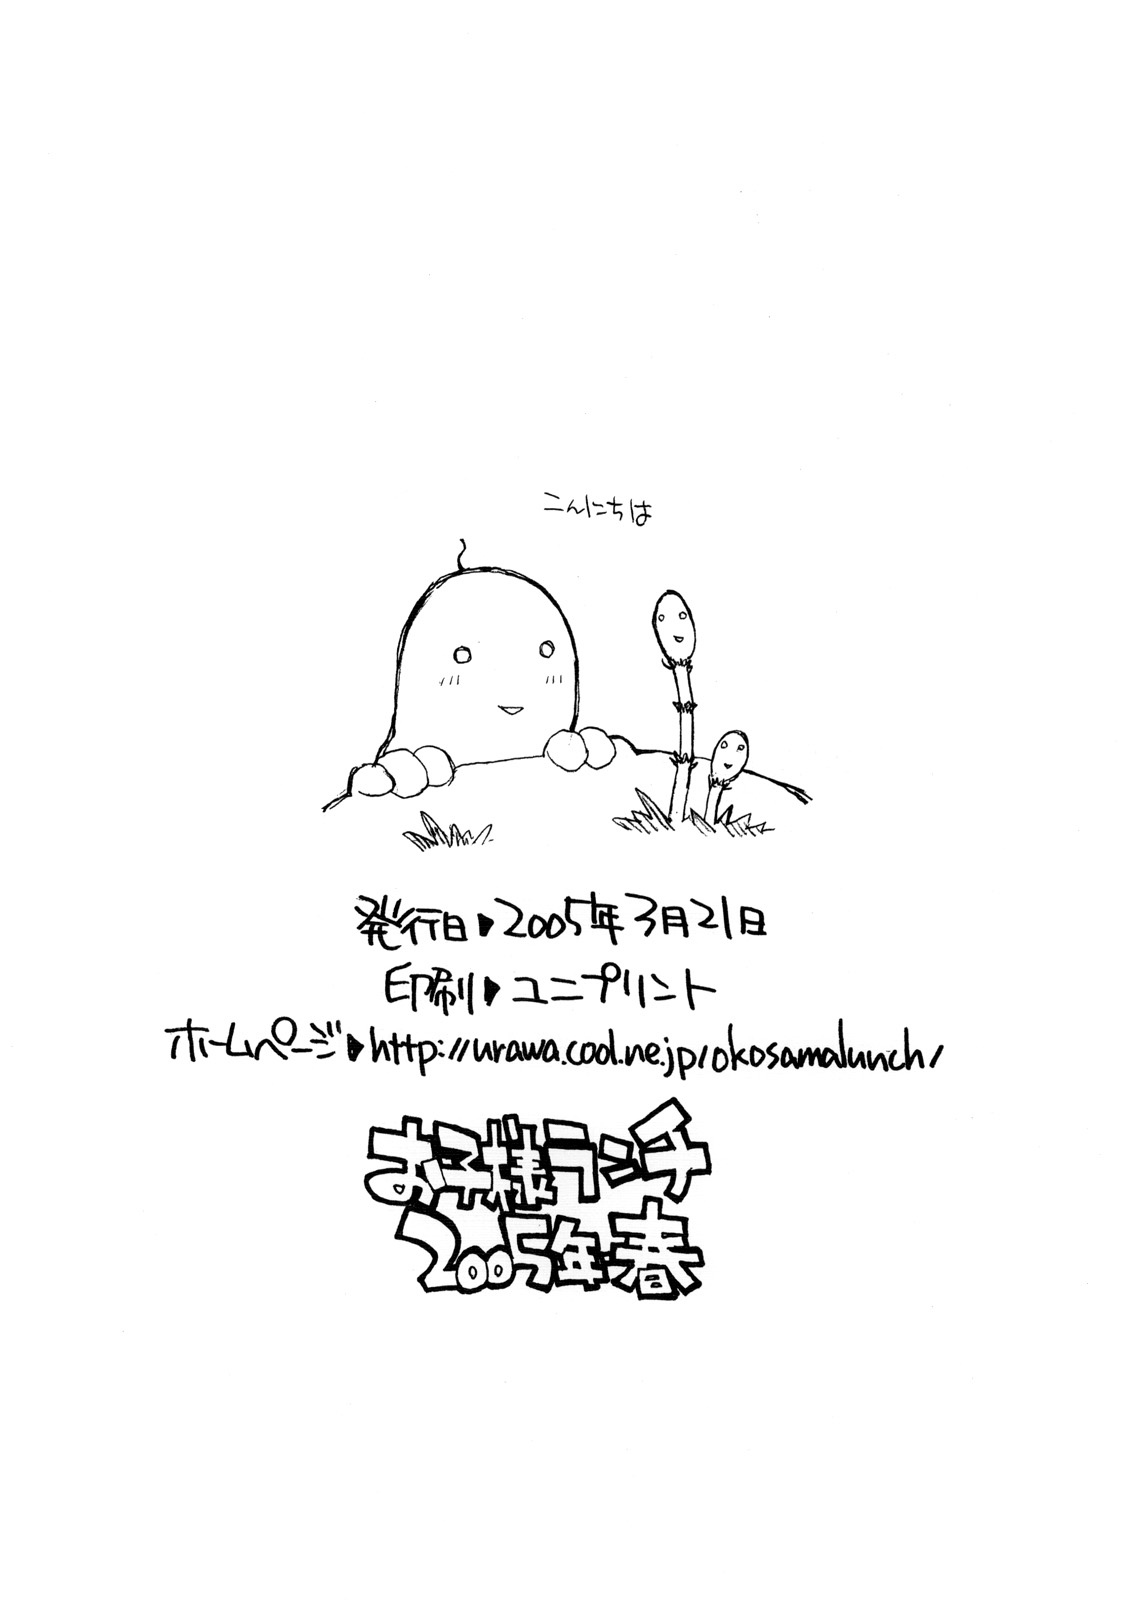 [okosama lunch] Okosama Pudding Alamode 8 [お子様ランチ] お子様プリン ア・ラ・モード 8